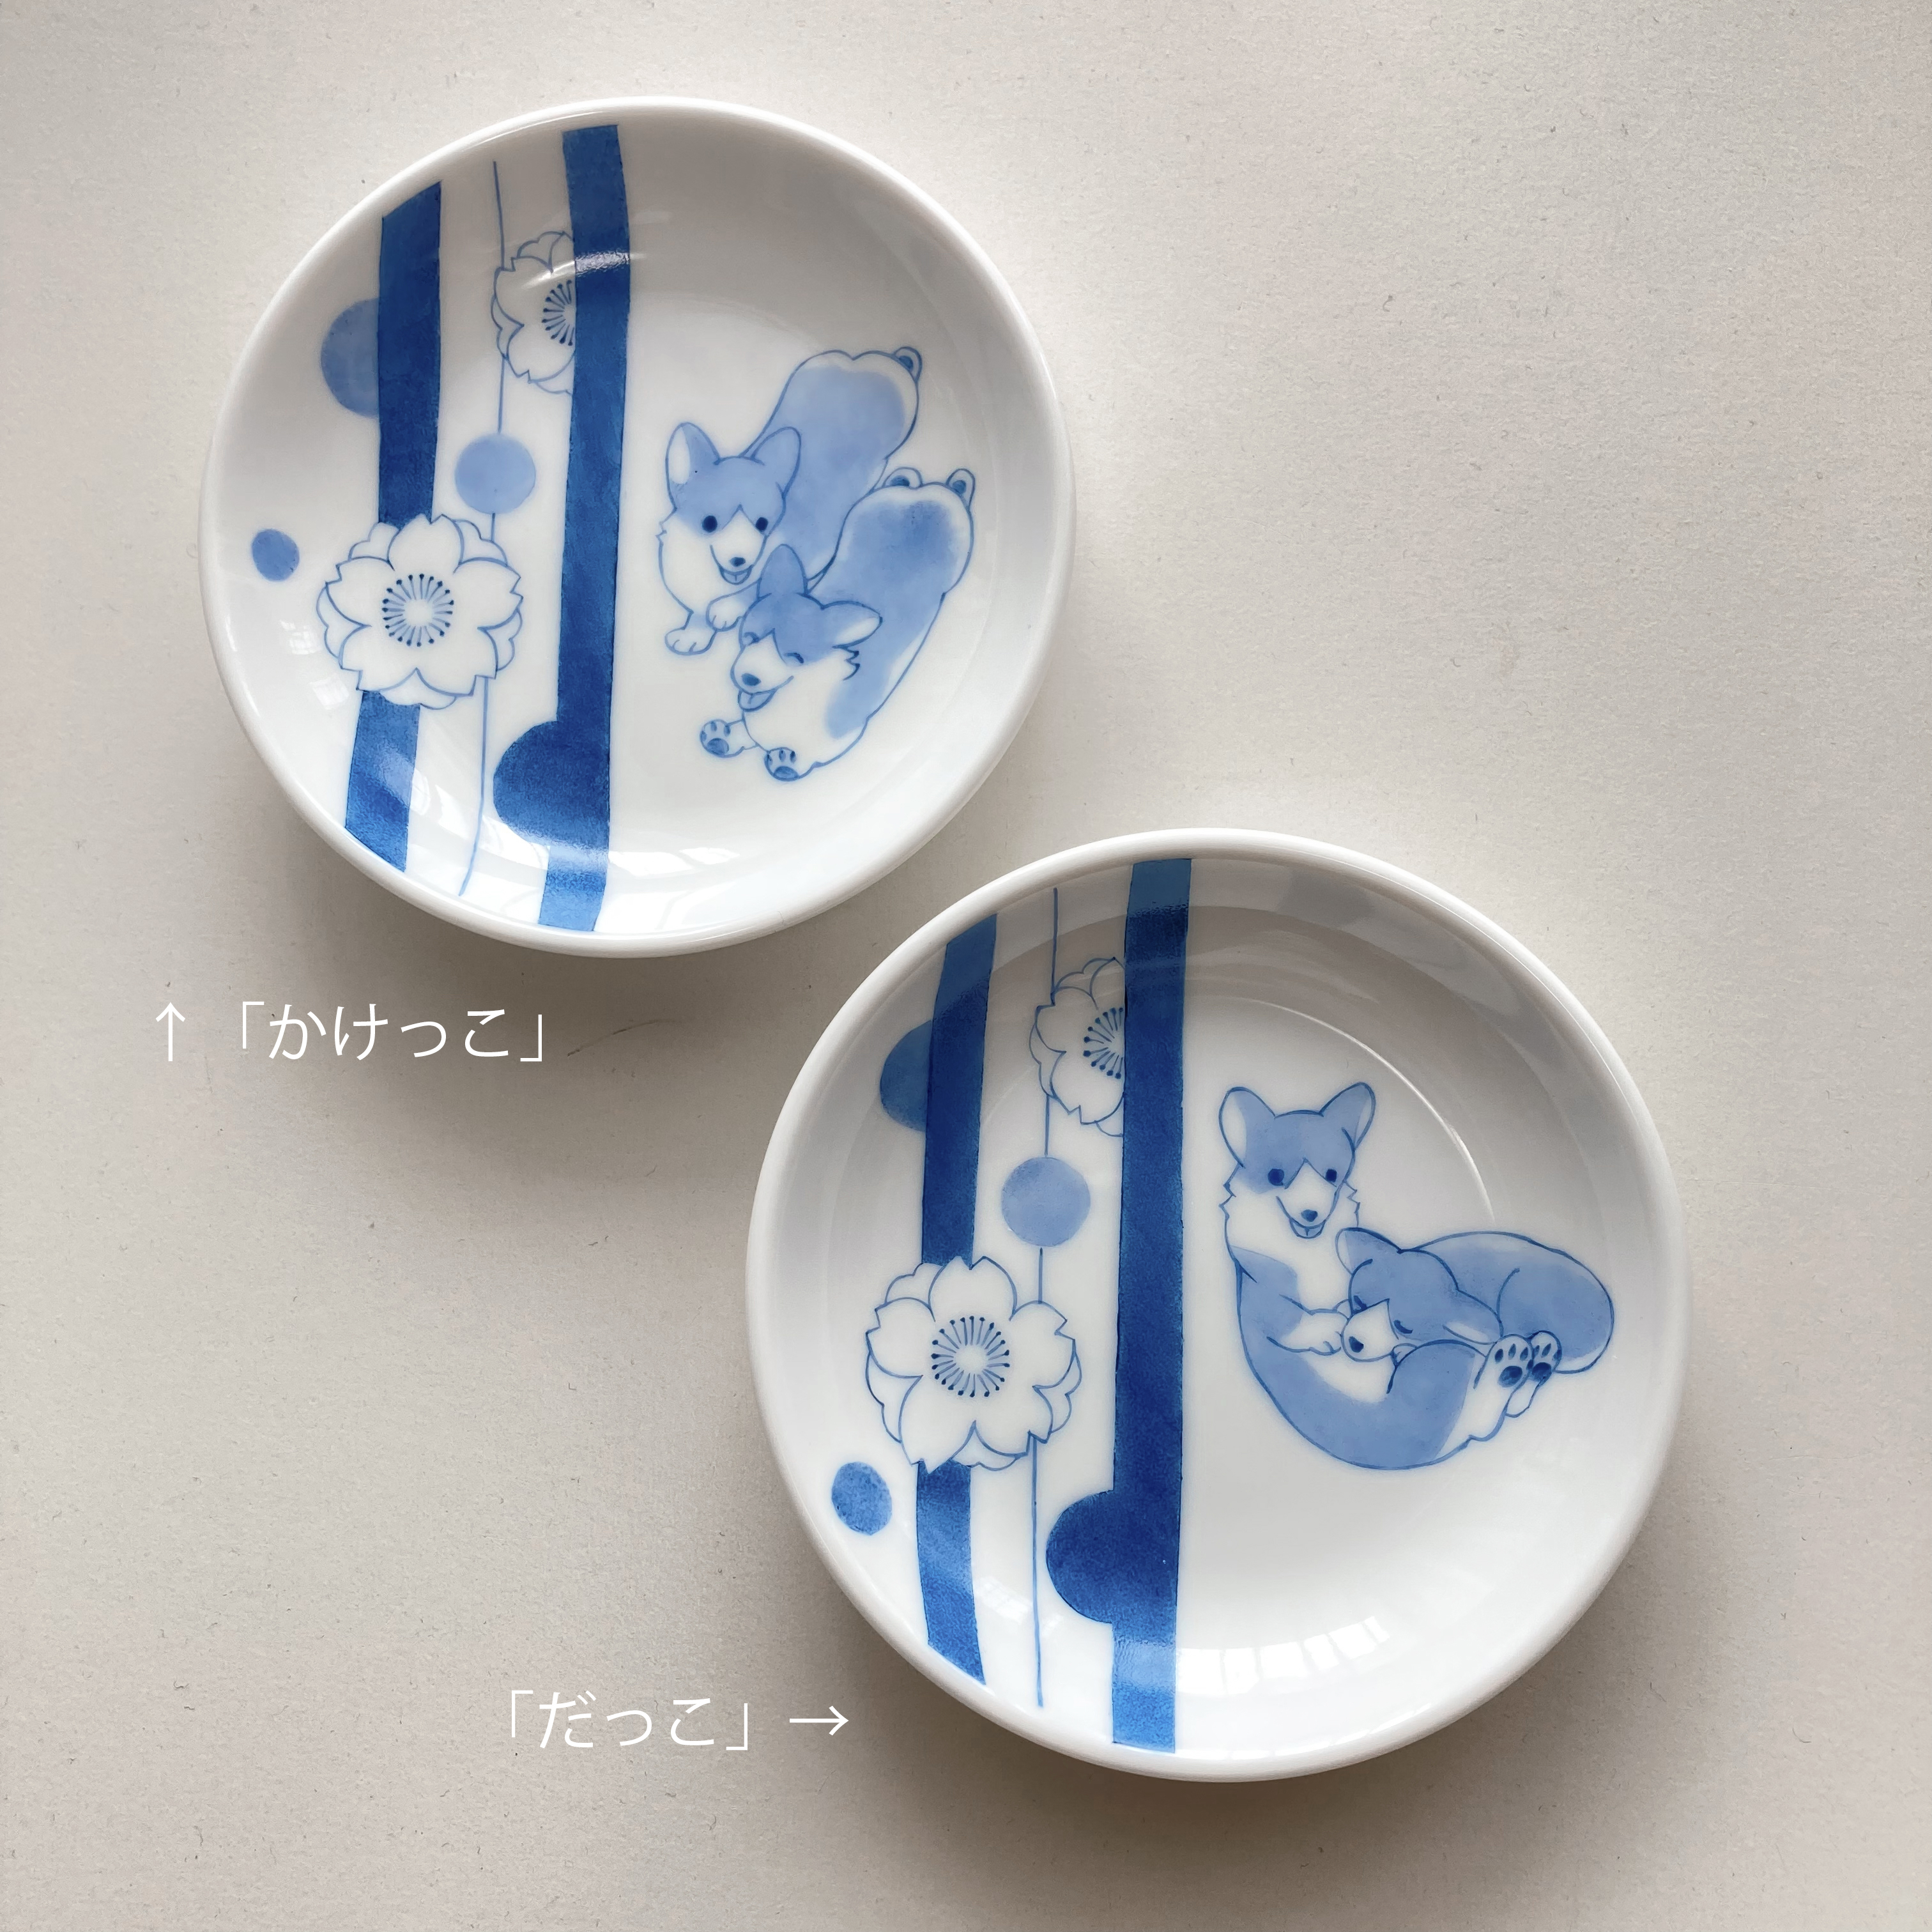 上絵藍色丸皿10cm「桜紋だっこ」